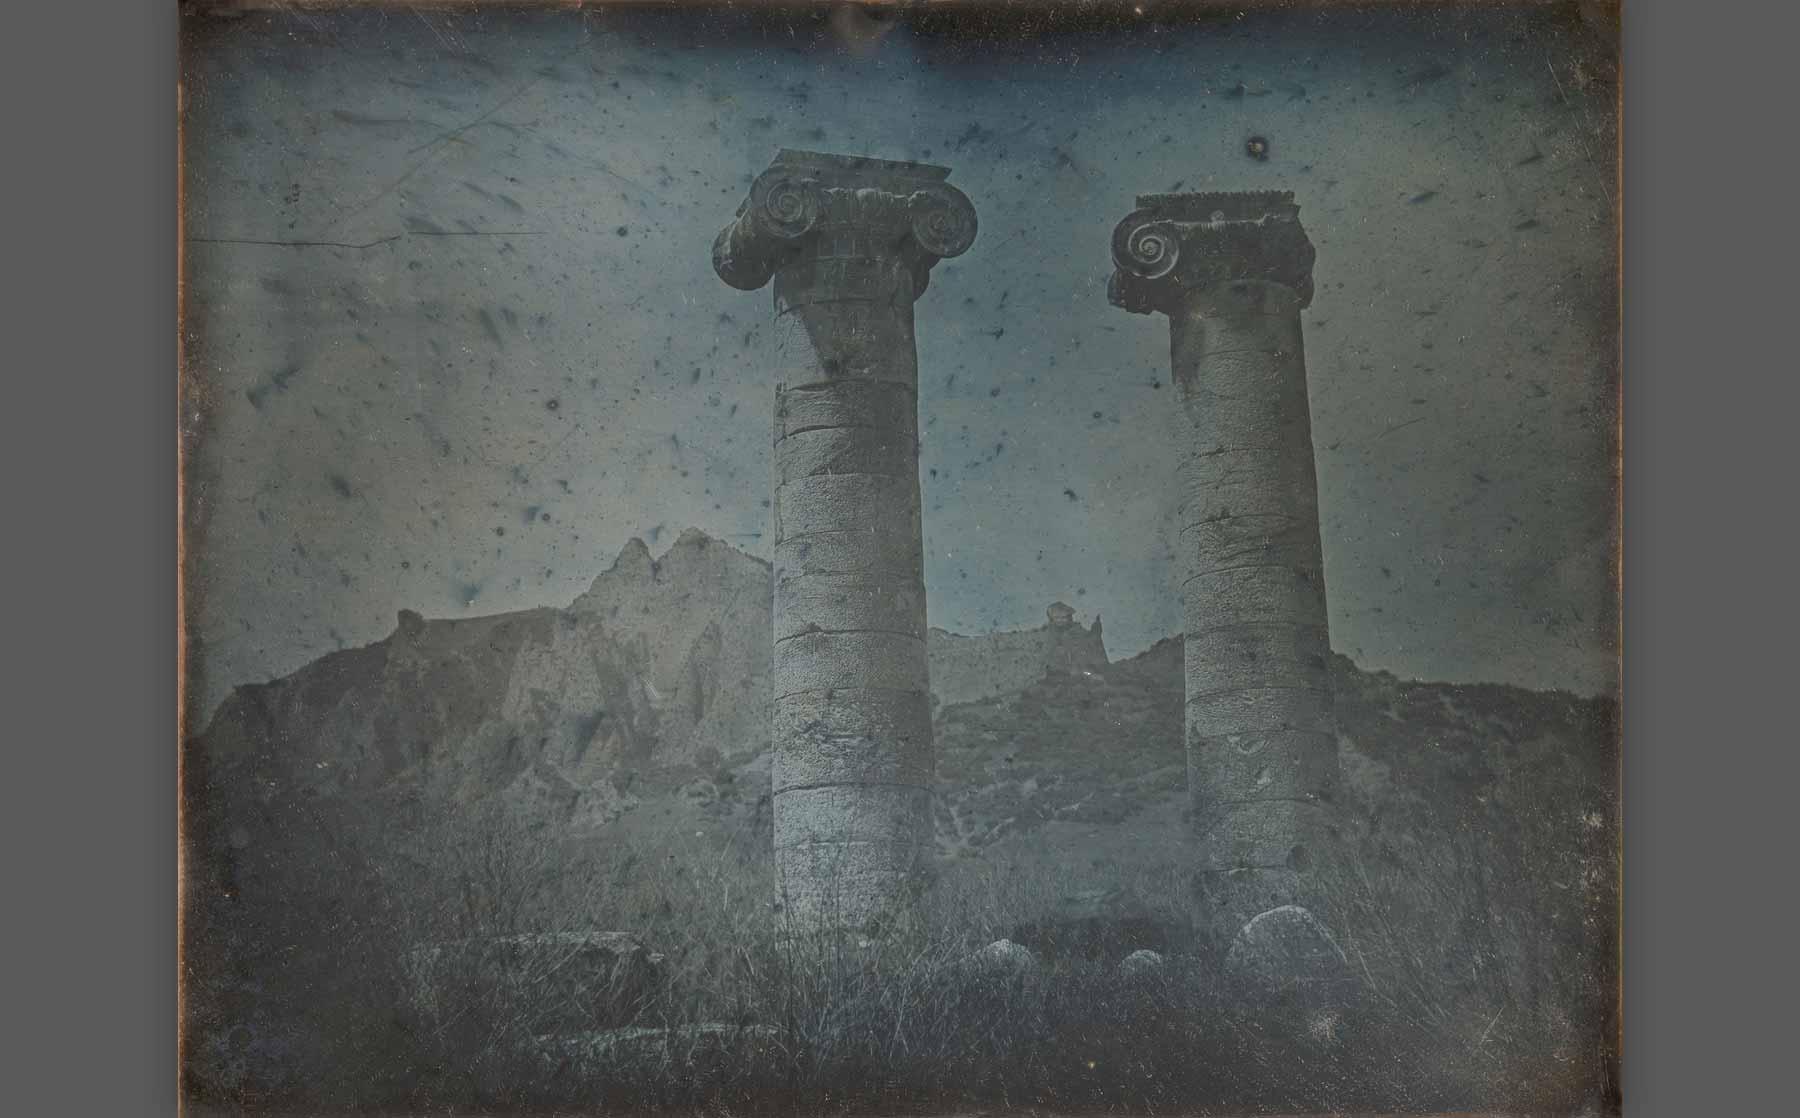 Girault de Prangey, “Temple of Artemis, Sardis” (1843), daguerreotype.